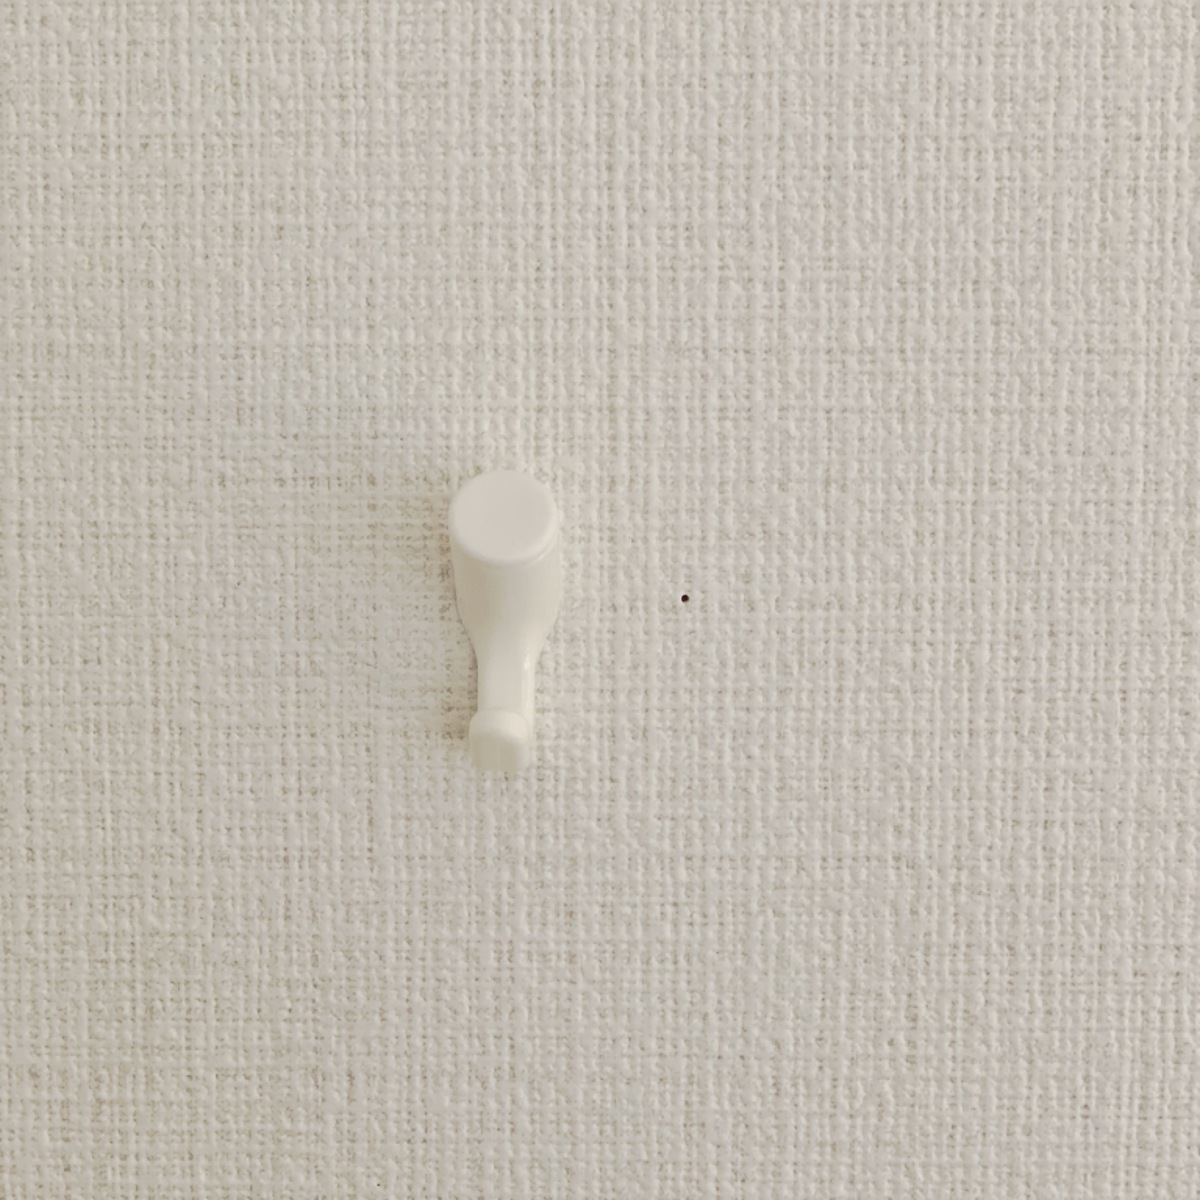 ダイソーのフック 壁紙に優しい便利な壁掛けアイテム マイナビウーマン子育て